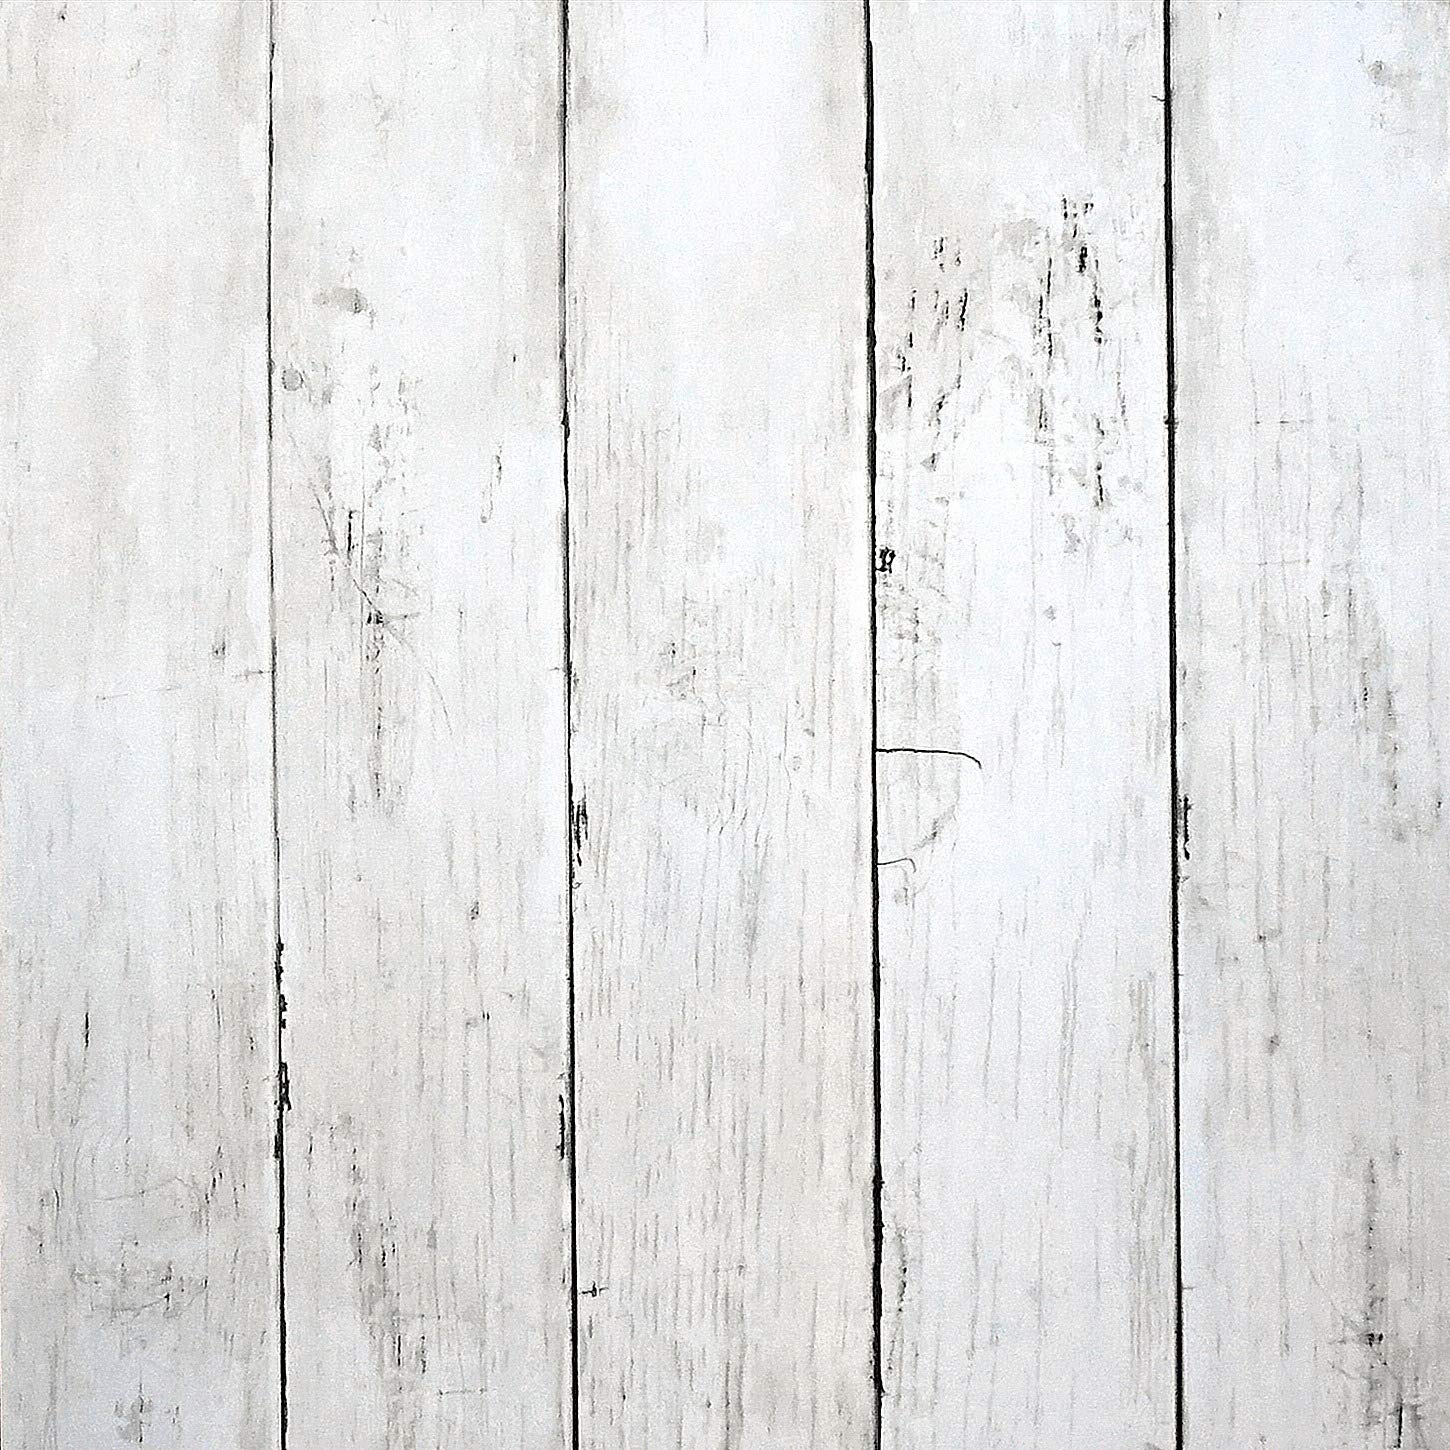 Hình nền gỗ trắng đem lại cho không gian sống của bạn vẻ đẹp hiện đại và thanh lịch. Hãy ngắm nhìn những đường vân gỗ trắng tinh tế và trở thành những người sở hữu nơi ở với phong cách độc đáo và đầy tinh tế.